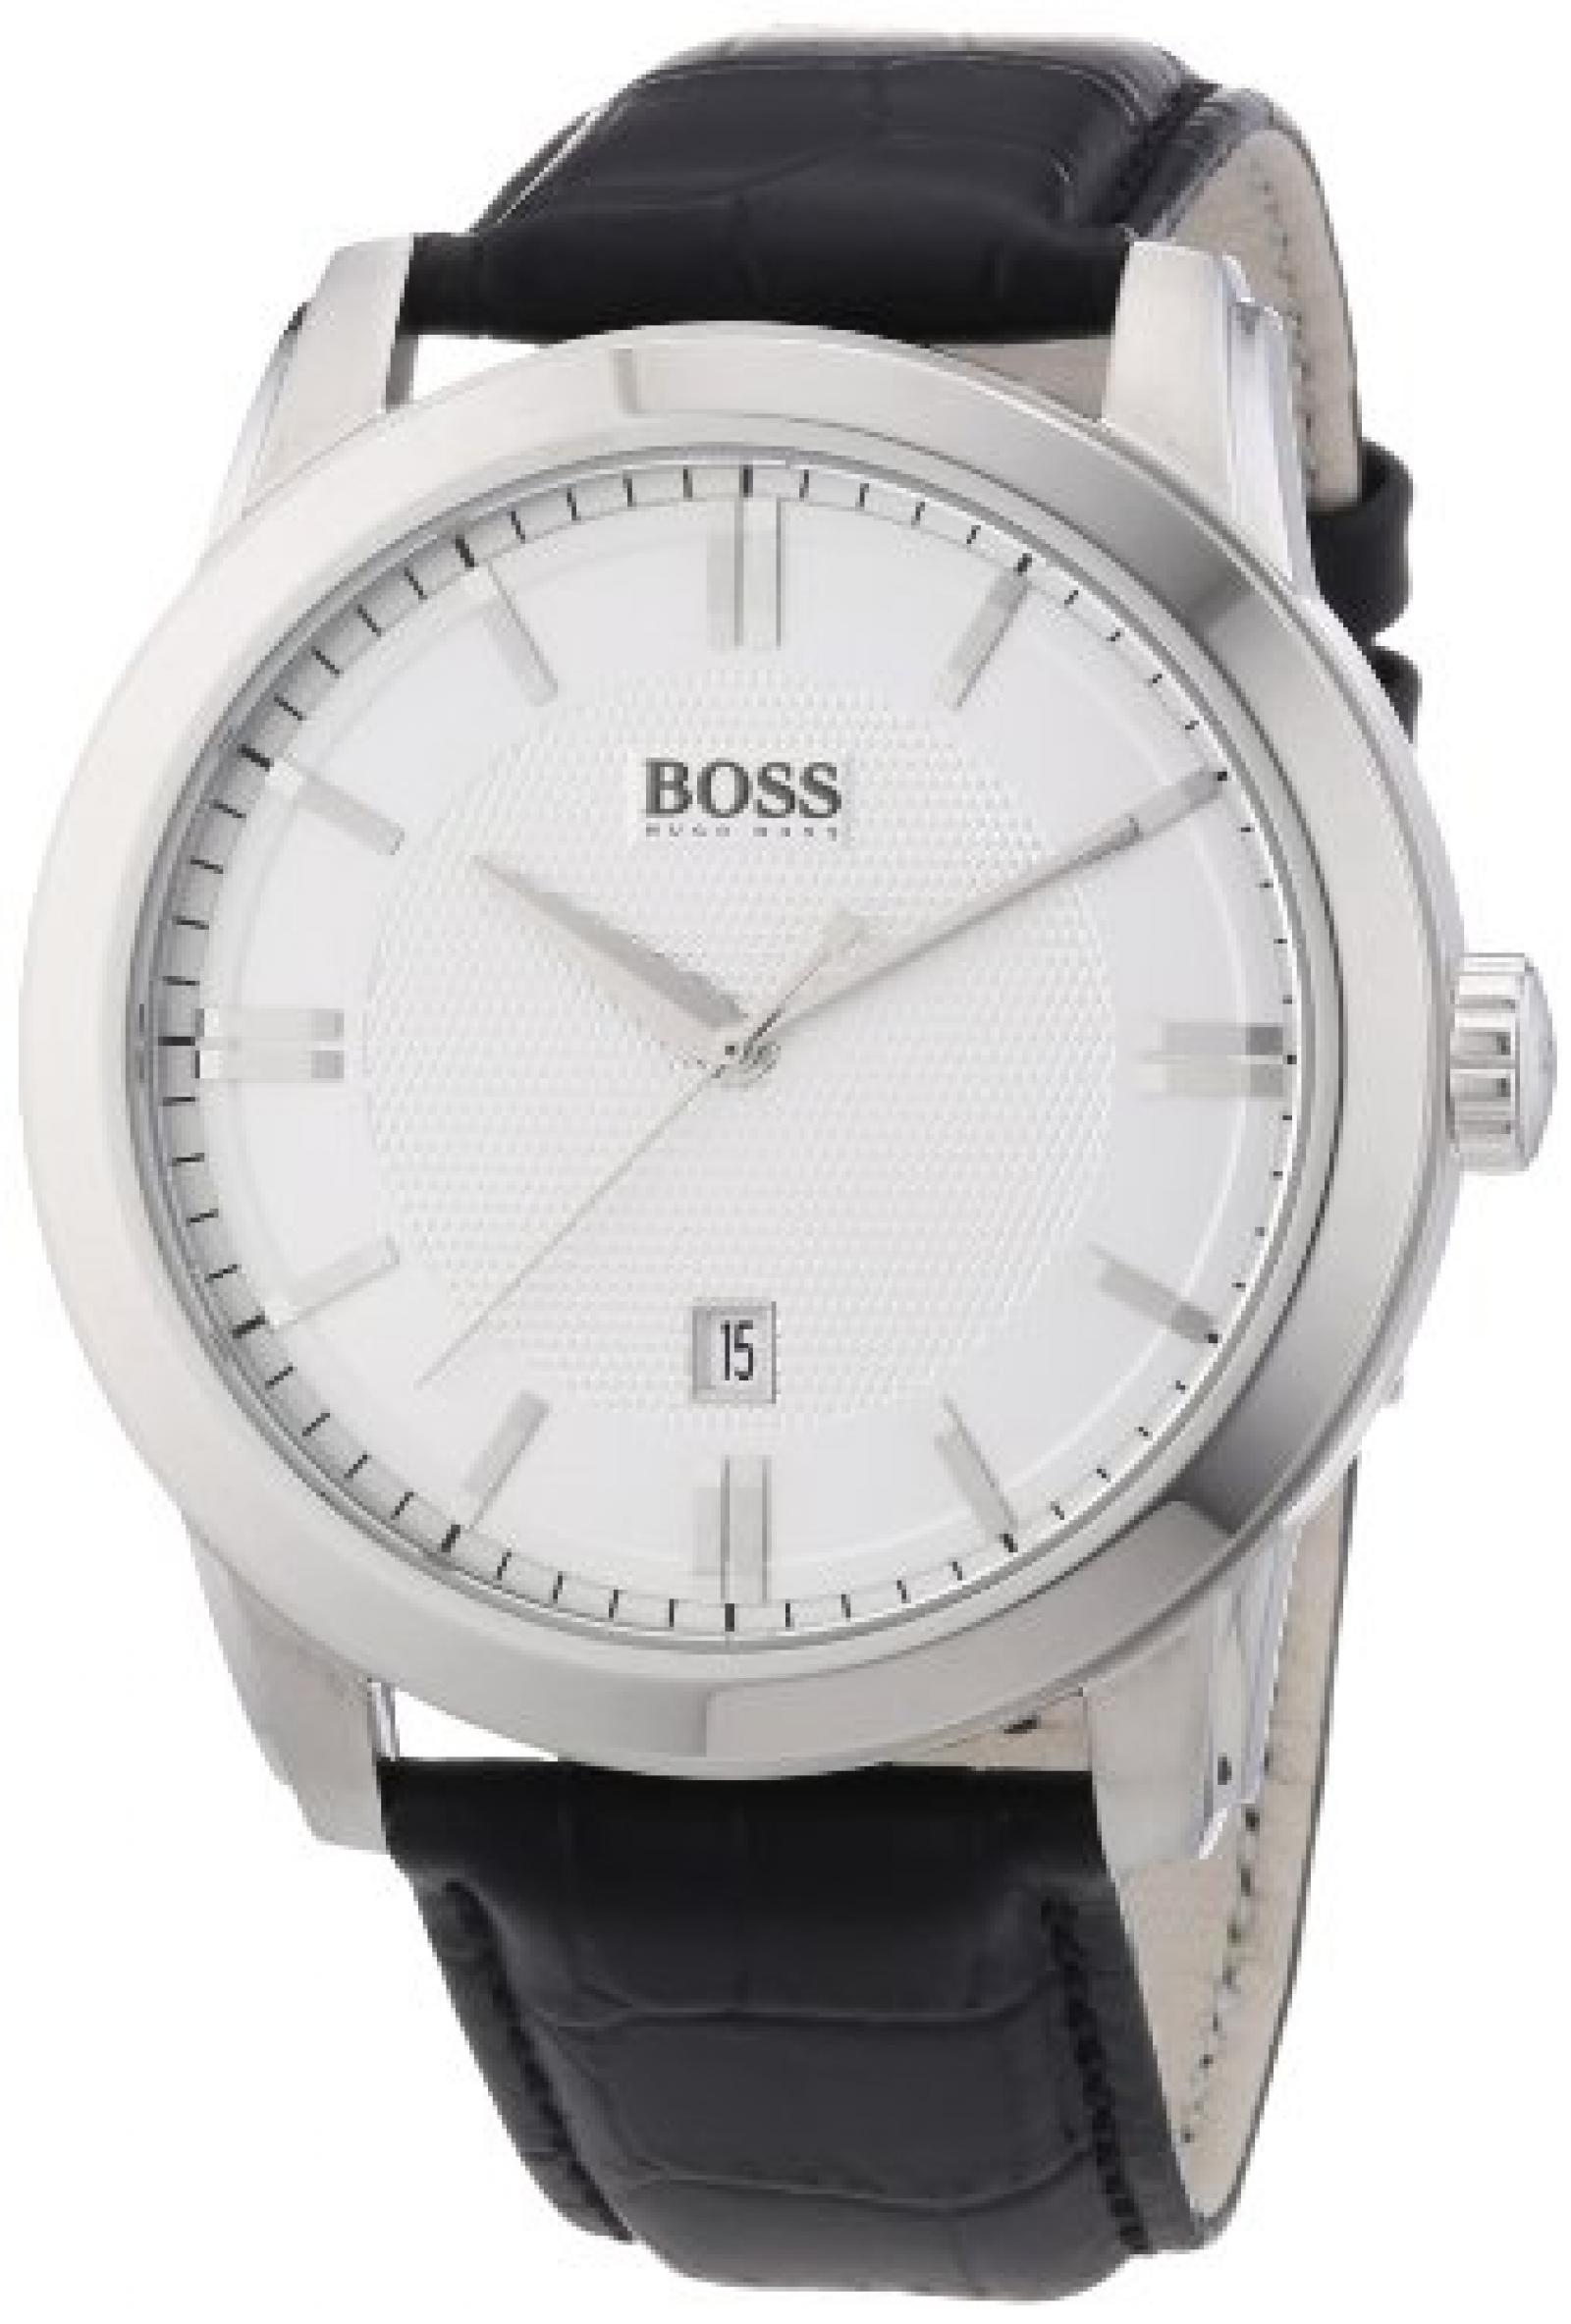 Hugo Boss Herren-Armbanduhr XL Analog Quarz Leder 1512766 